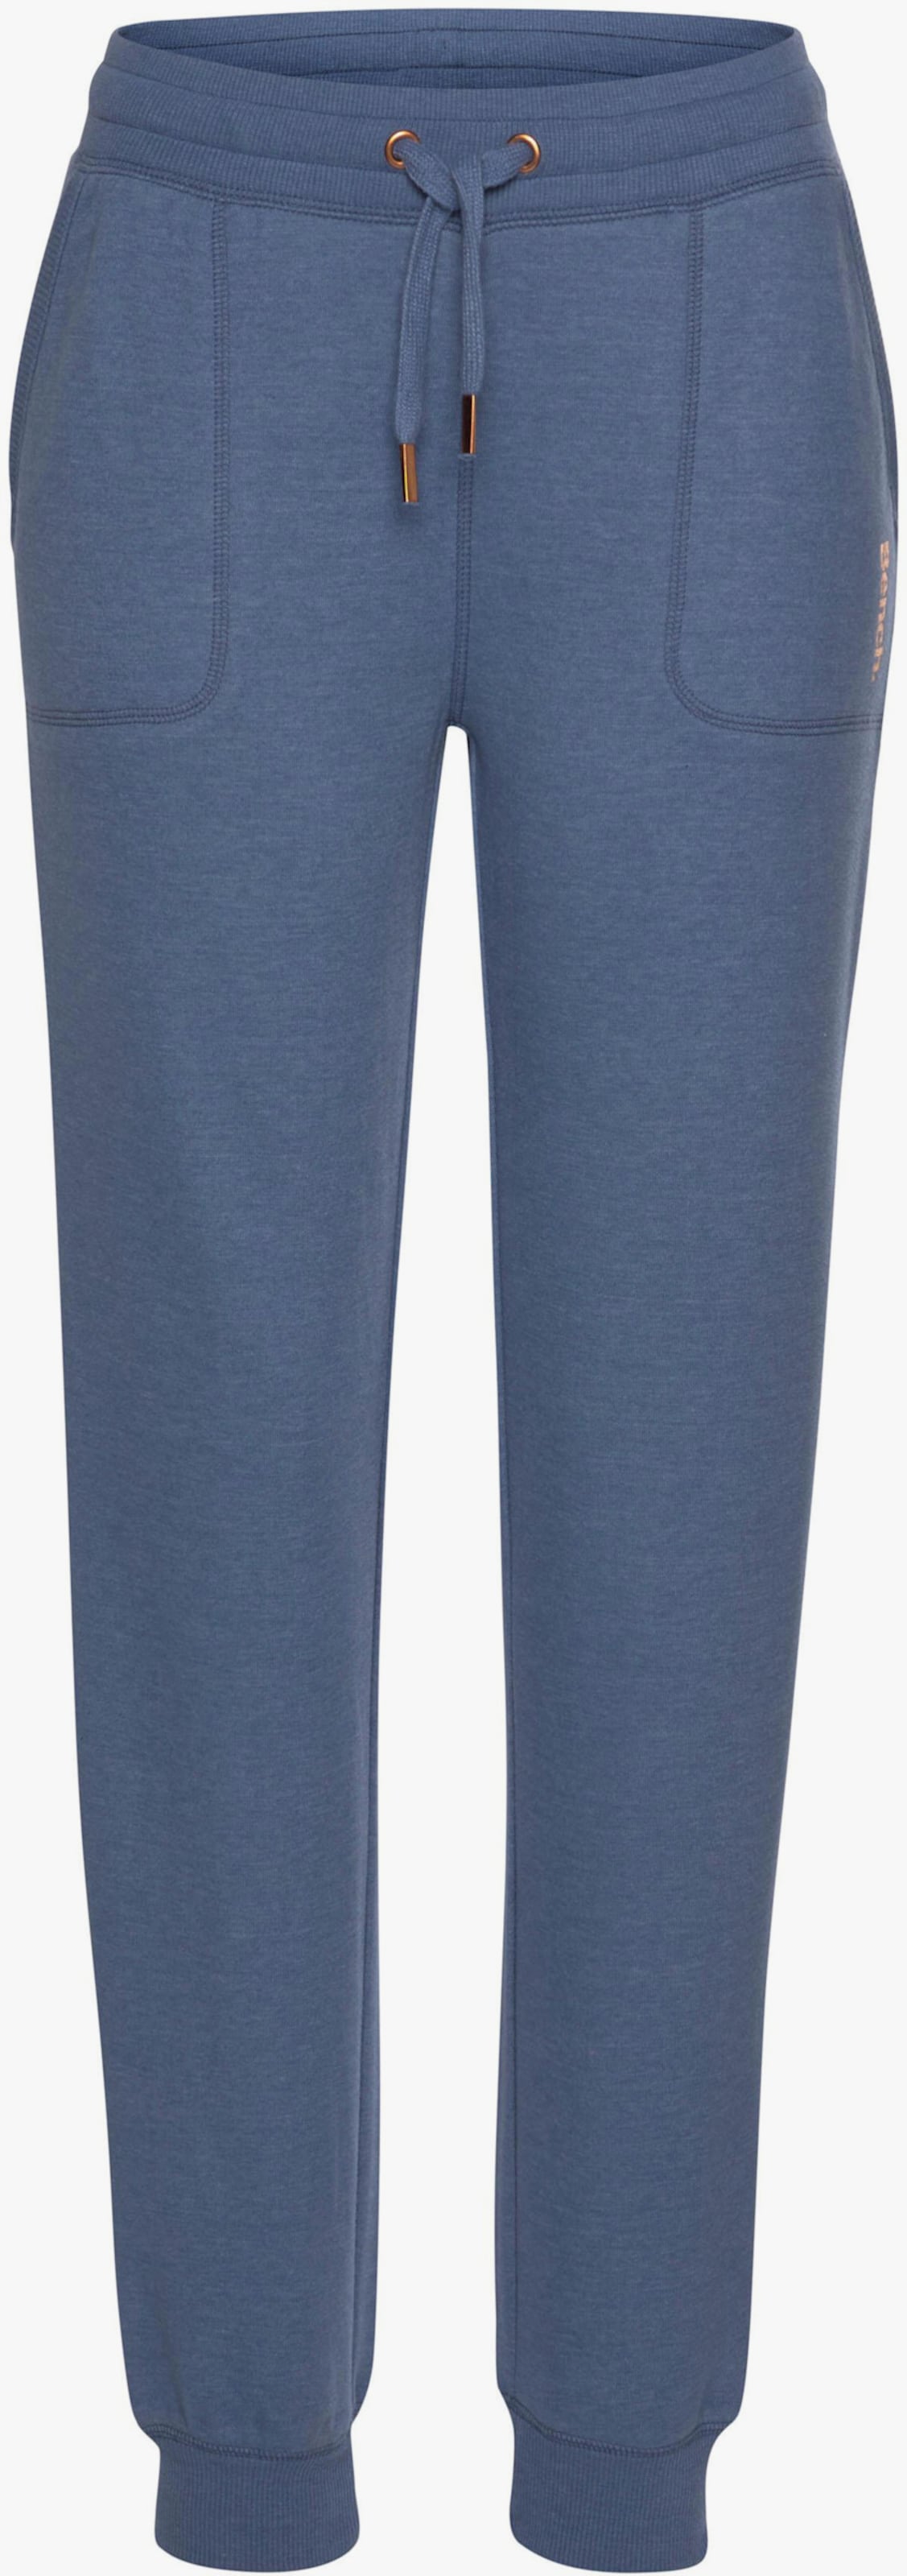 Pantalon lounge - jeans chiné